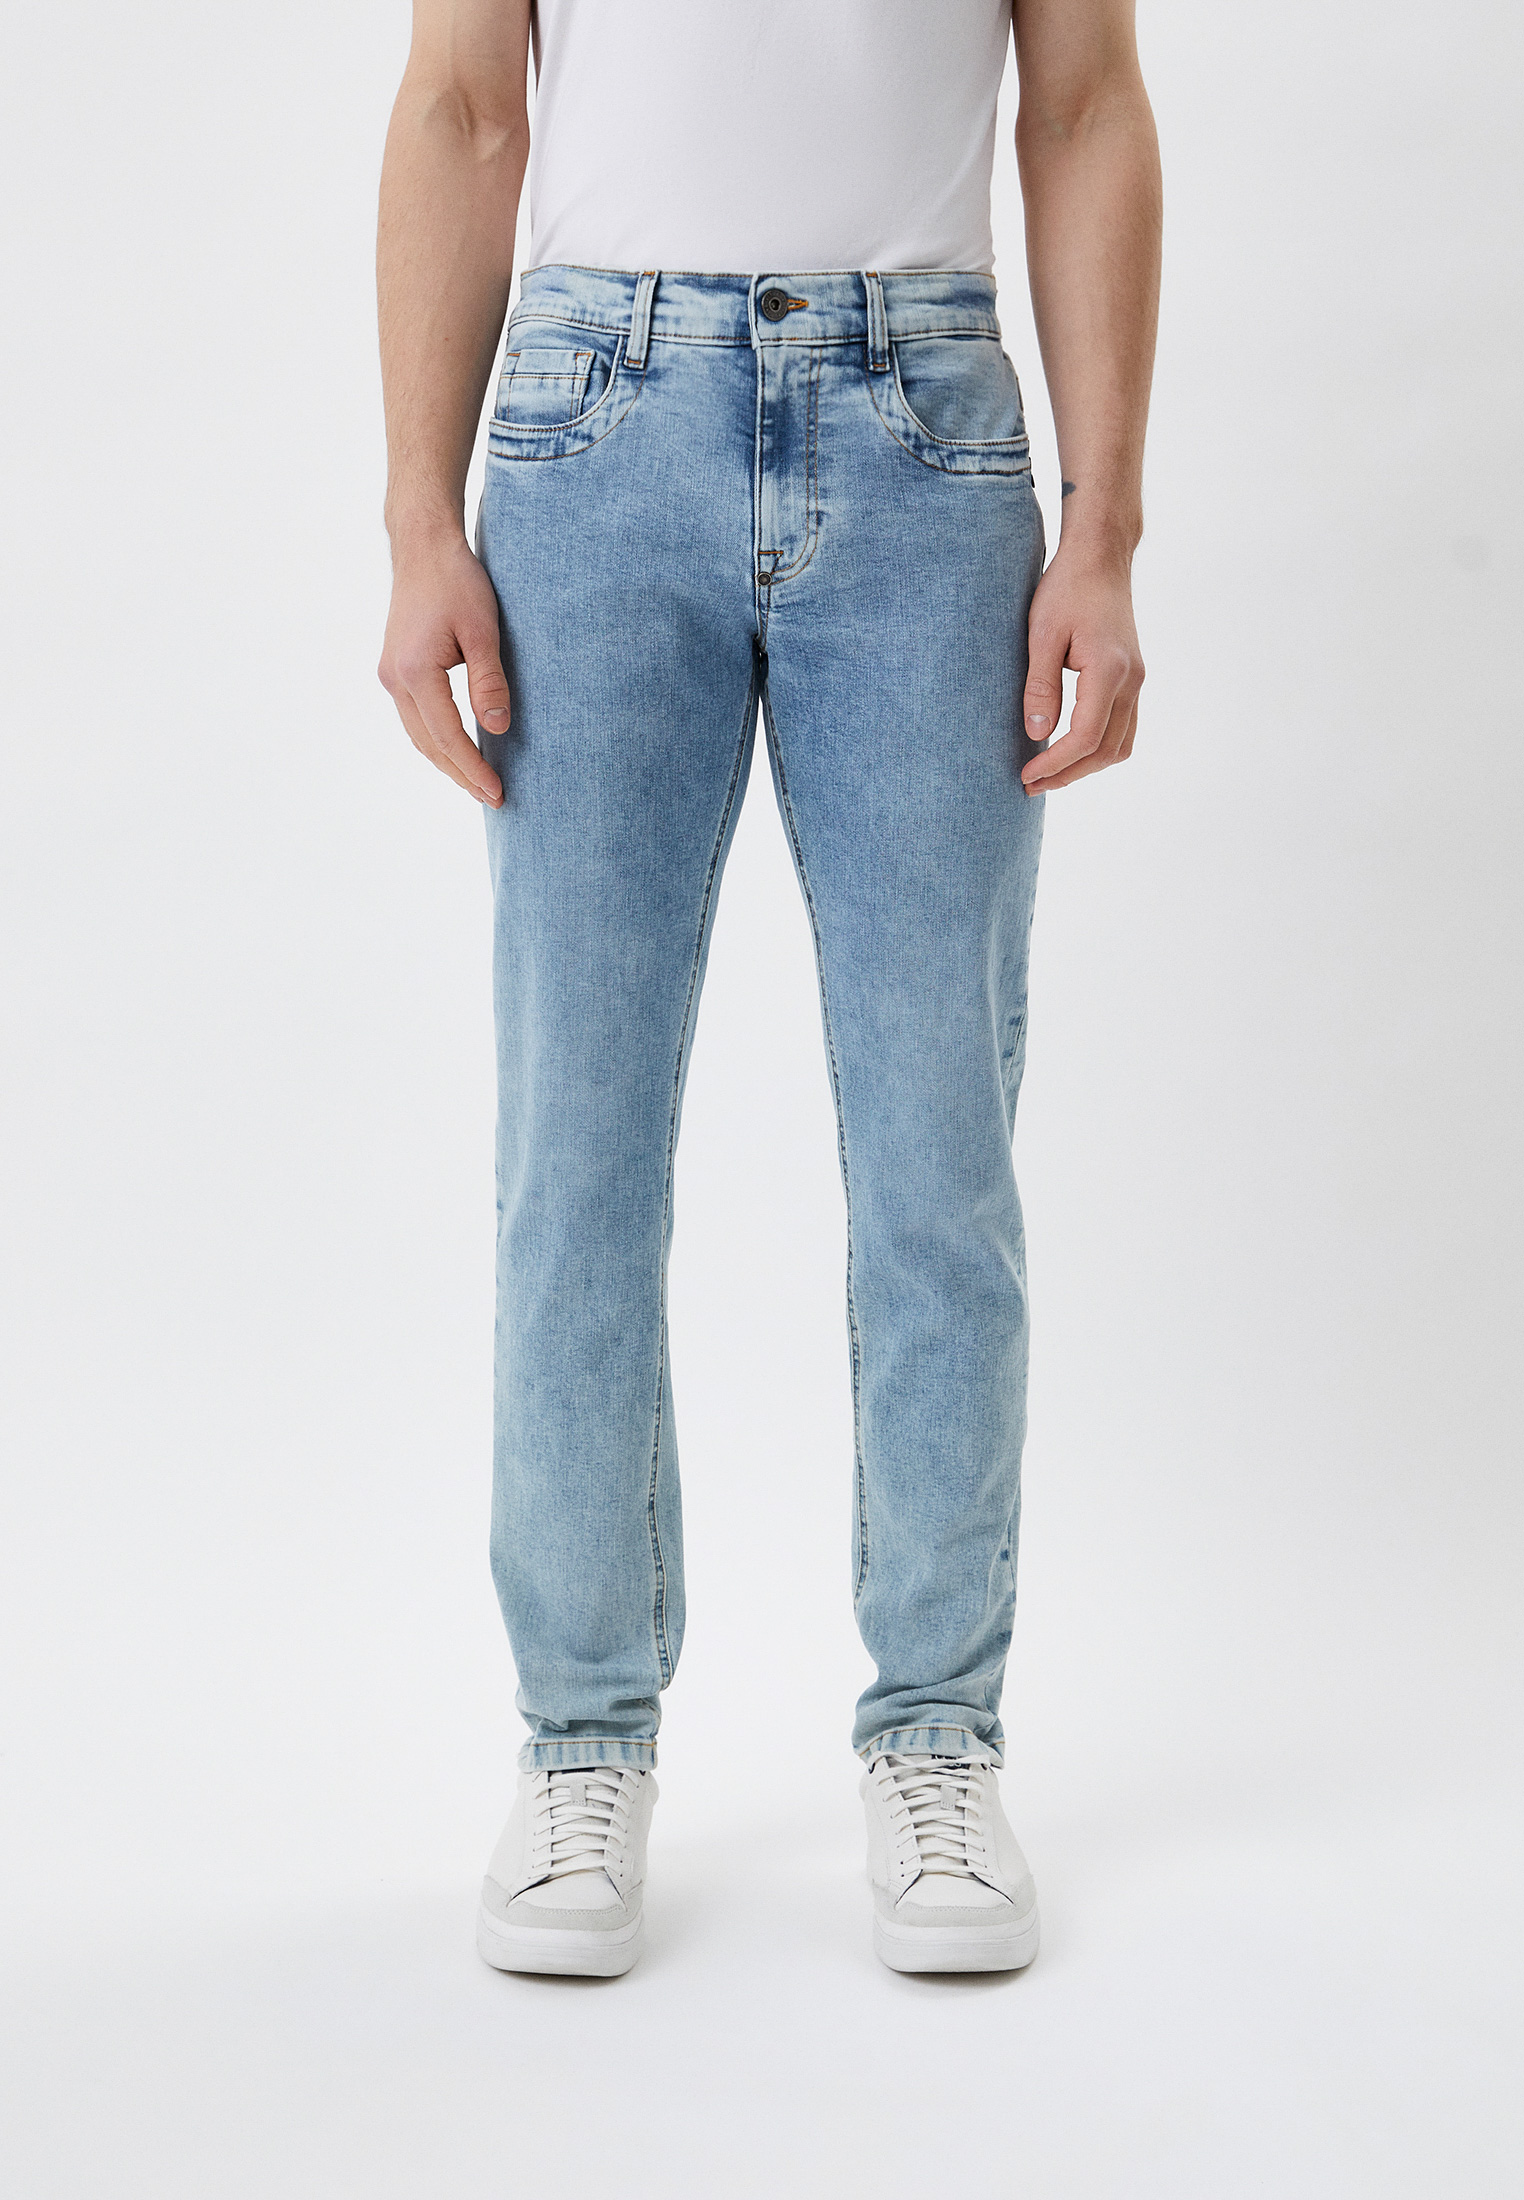 Мужские прямые джинсы Bikkembergs (Биккембергс) CQ10186S3379: изображение 1